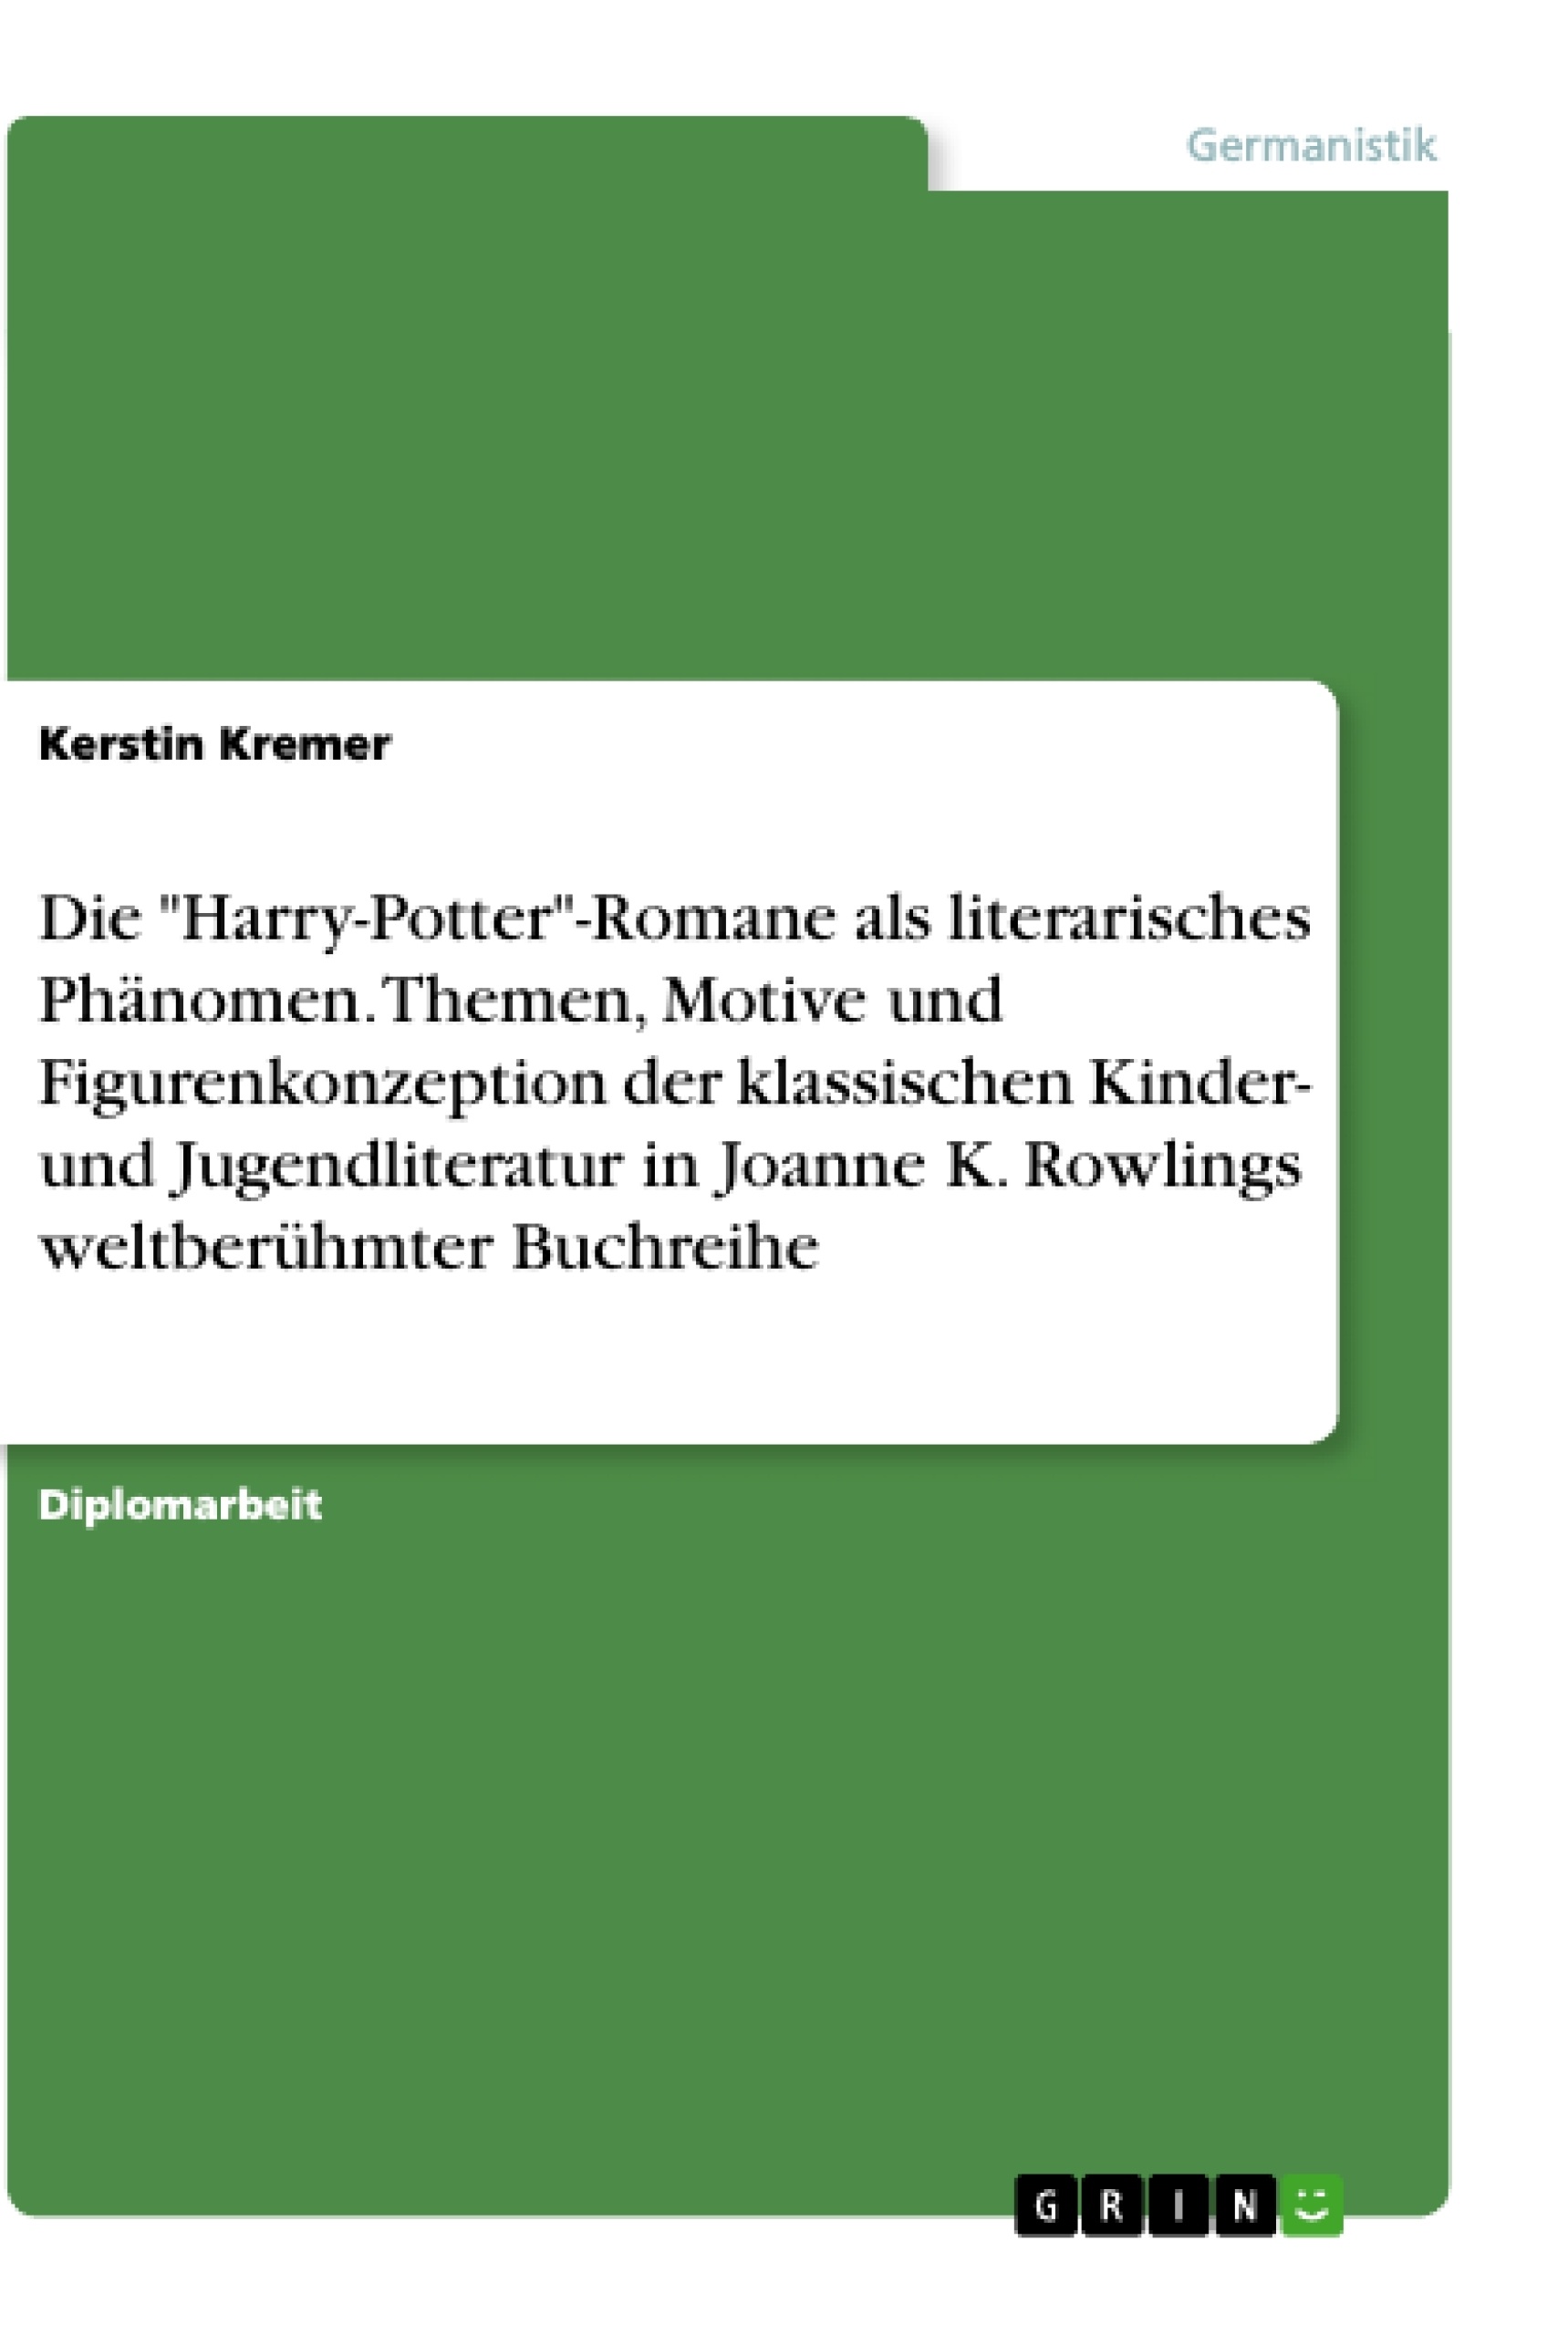 Titel: Die "Harry-Potter"-Romane als literarisches Phänomen. Themen, Motive und Figurenkonzeption der klassischen Kinder- und Jugendliteratur in Joanne K. Rowlings weltberühmter Buchreihe